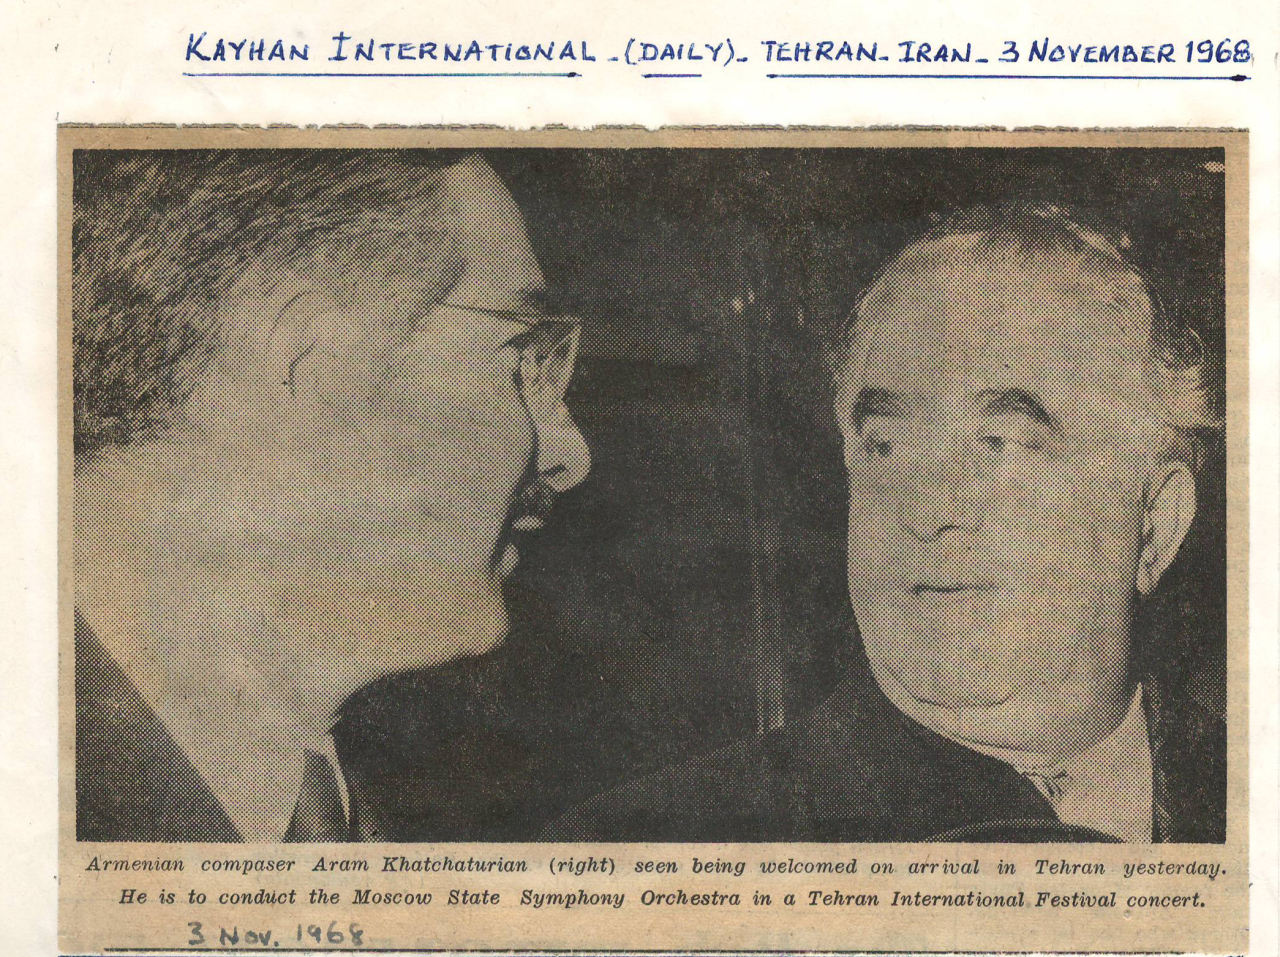 Հաղորդագրություն Ա. Խաչատրյանի հեղինակային համերգներով Թեհրանում գտնվելու մասին՝ «Kayhan International» թերթում